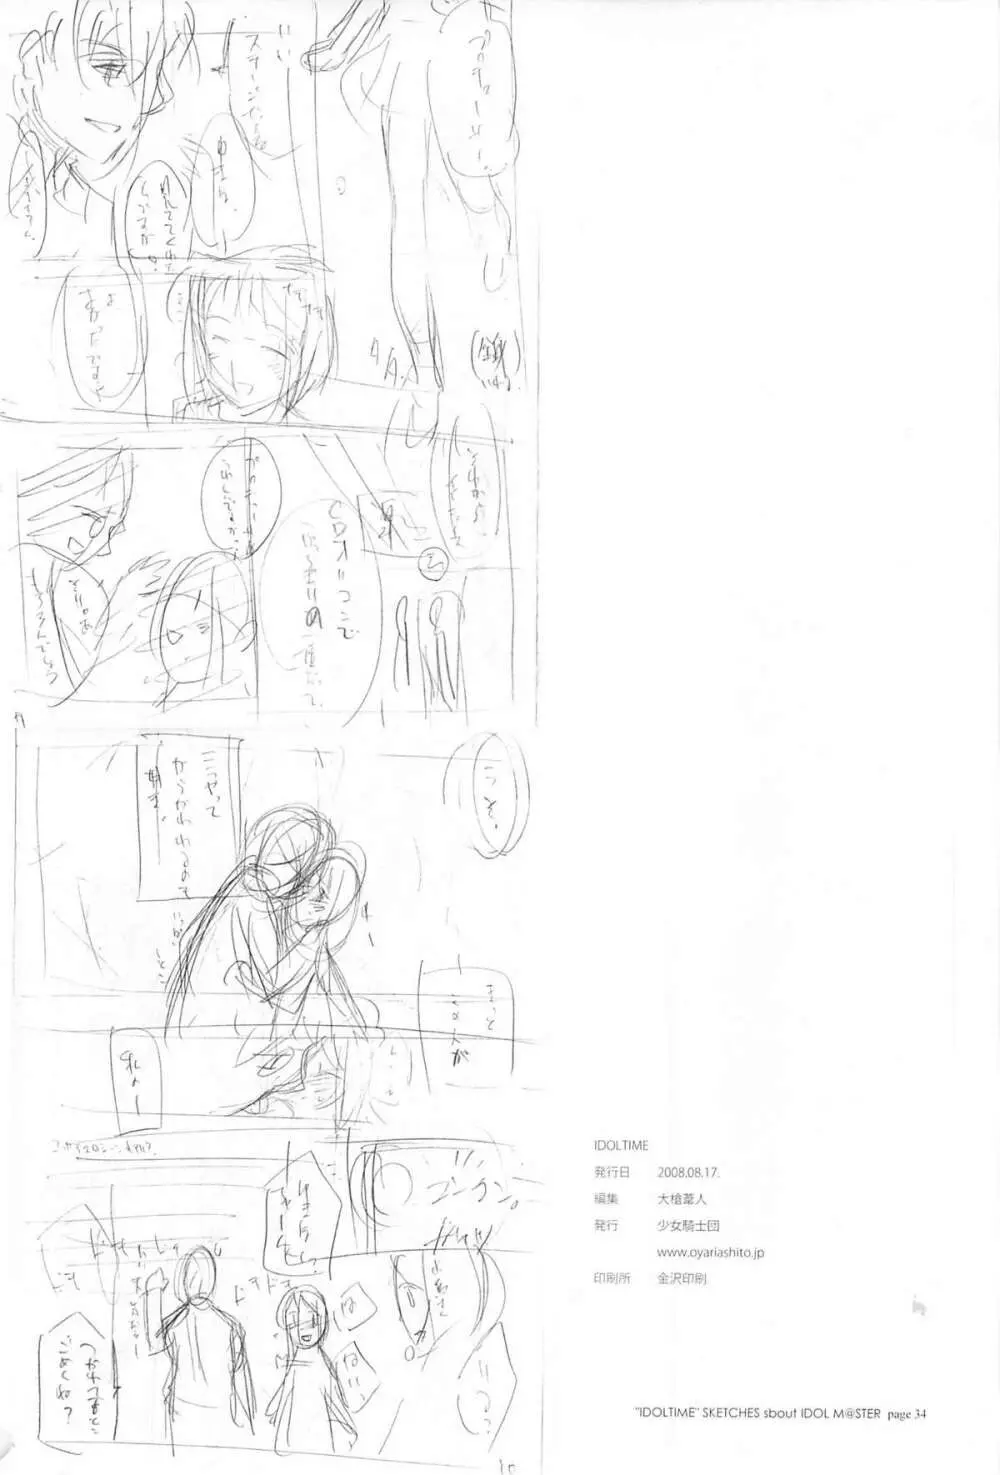 IDOLTIME featuring YUKIHO HAGIWARA 33ページ